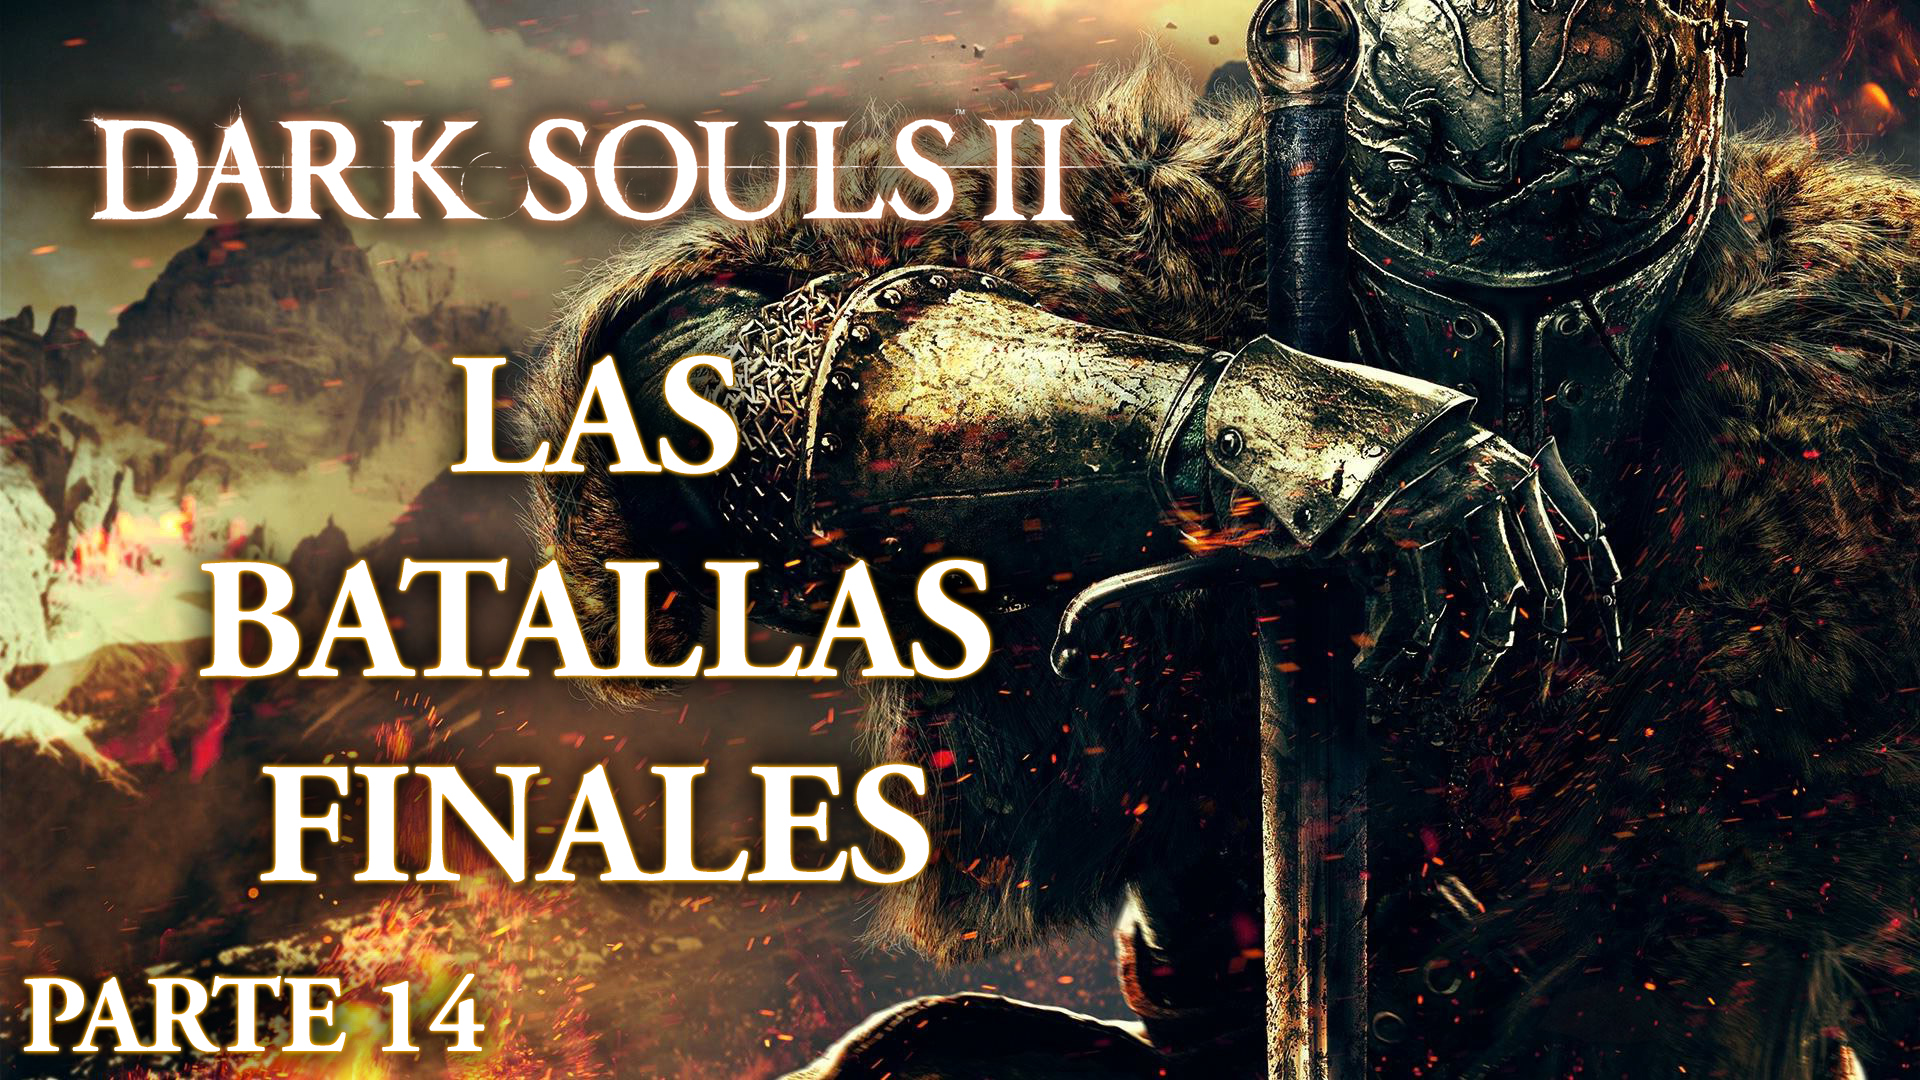 Serie Dark Souls II Parte 14: Las batallas finales